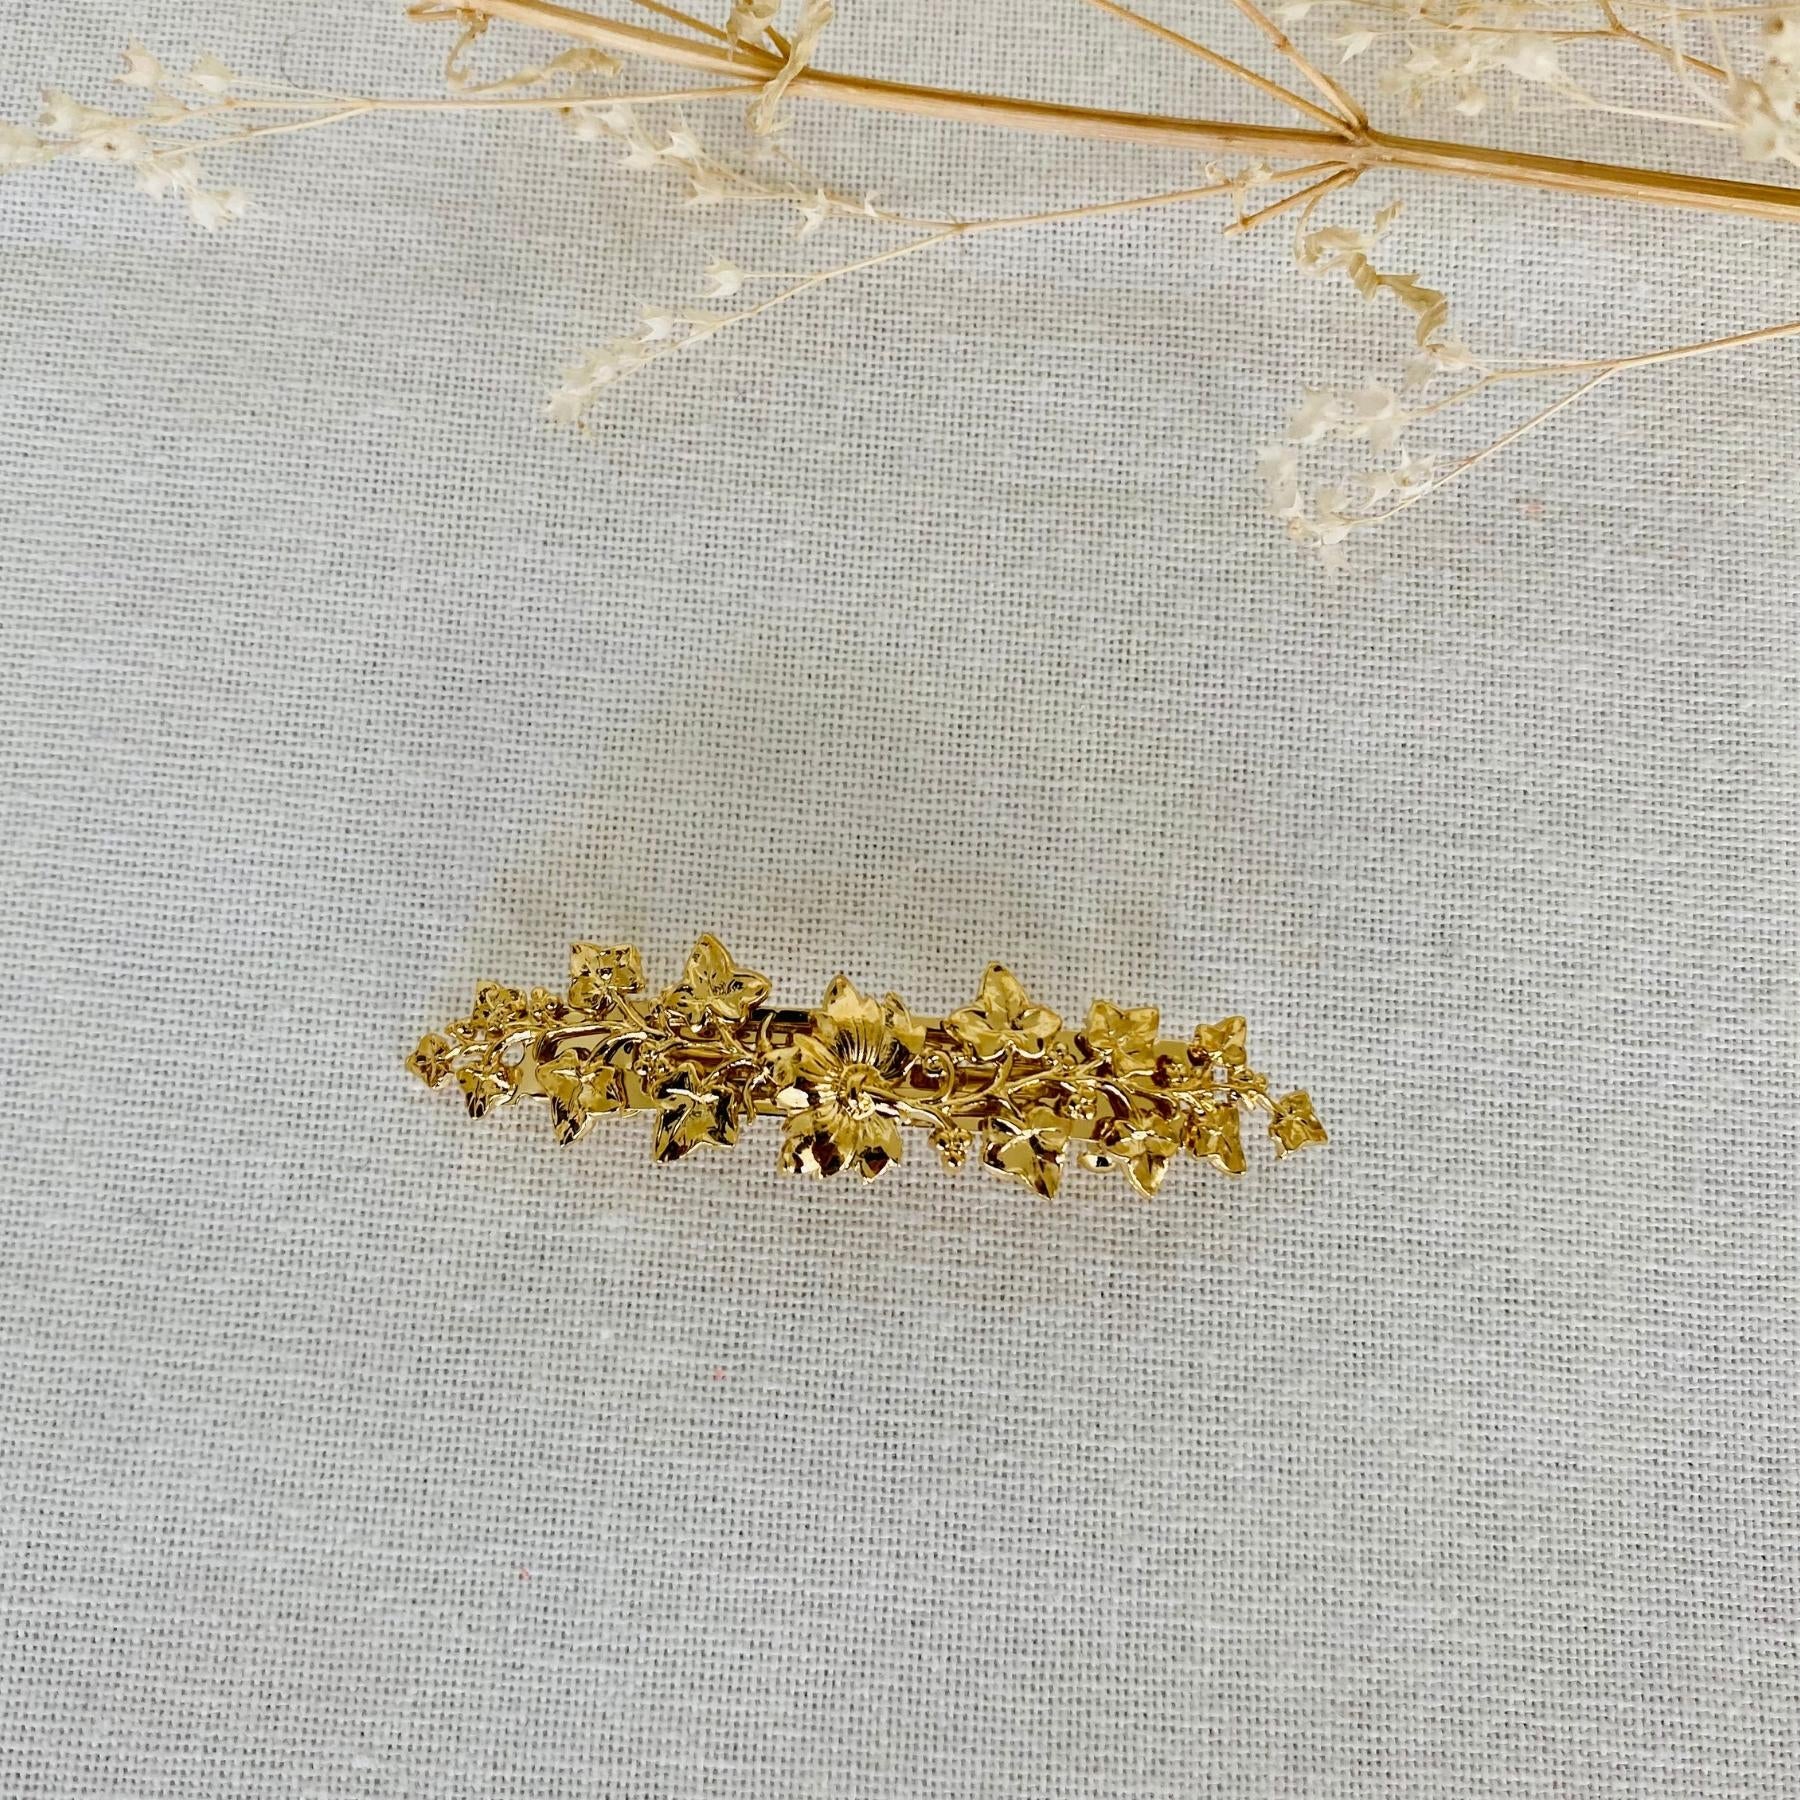 Petite barrette à cheveux dorée en métal fleurs originale et chic